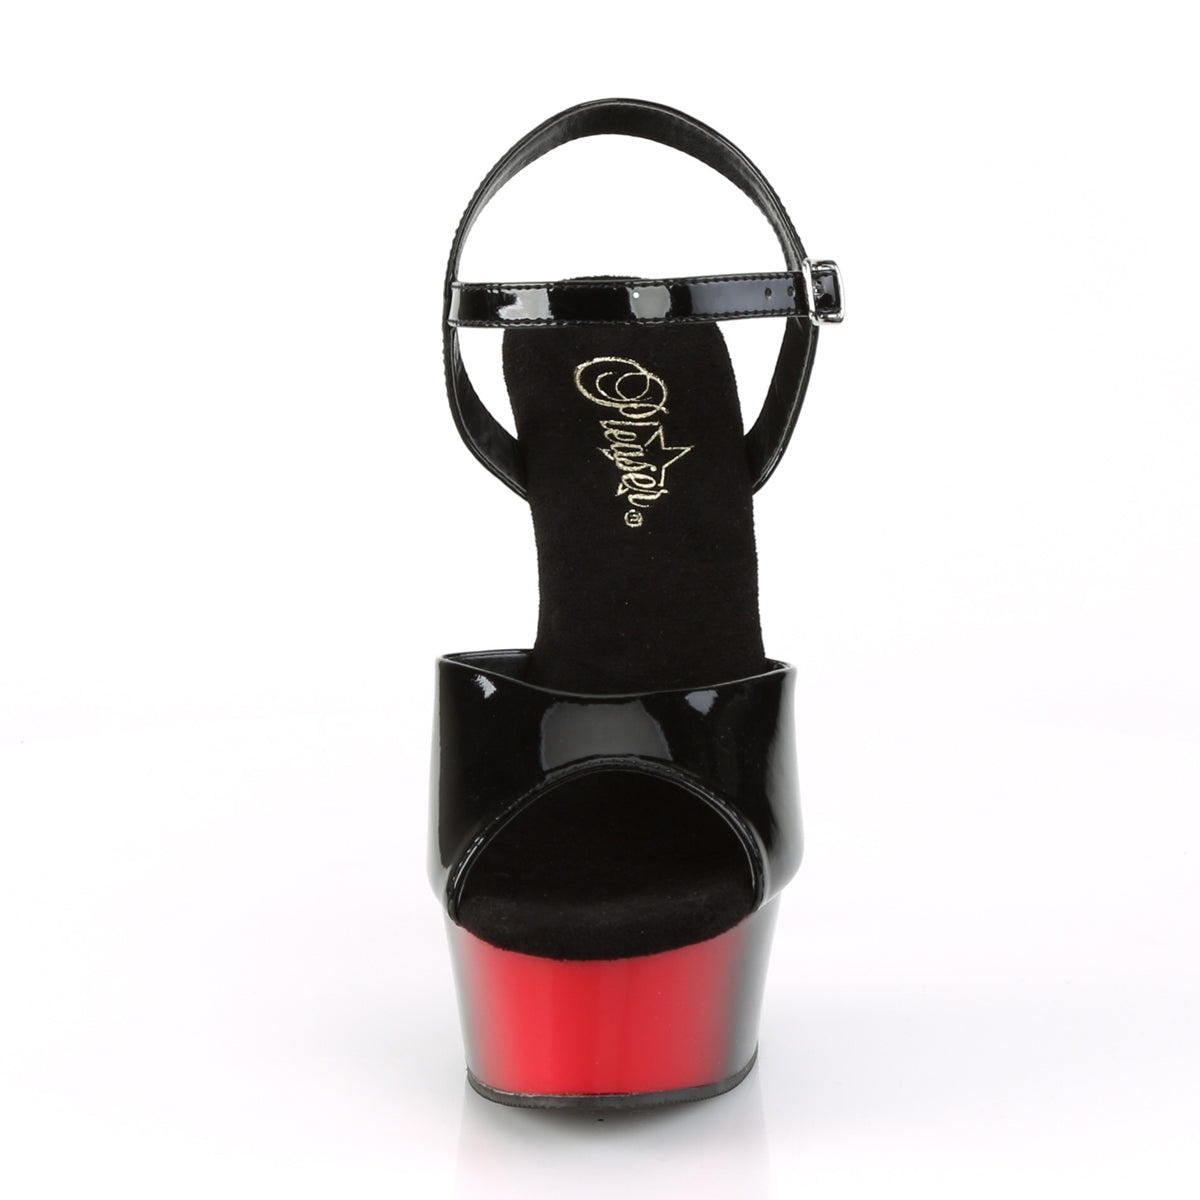 DELIGHT-609BR Black Patent/Red-Black Platform Sandal Pleaser